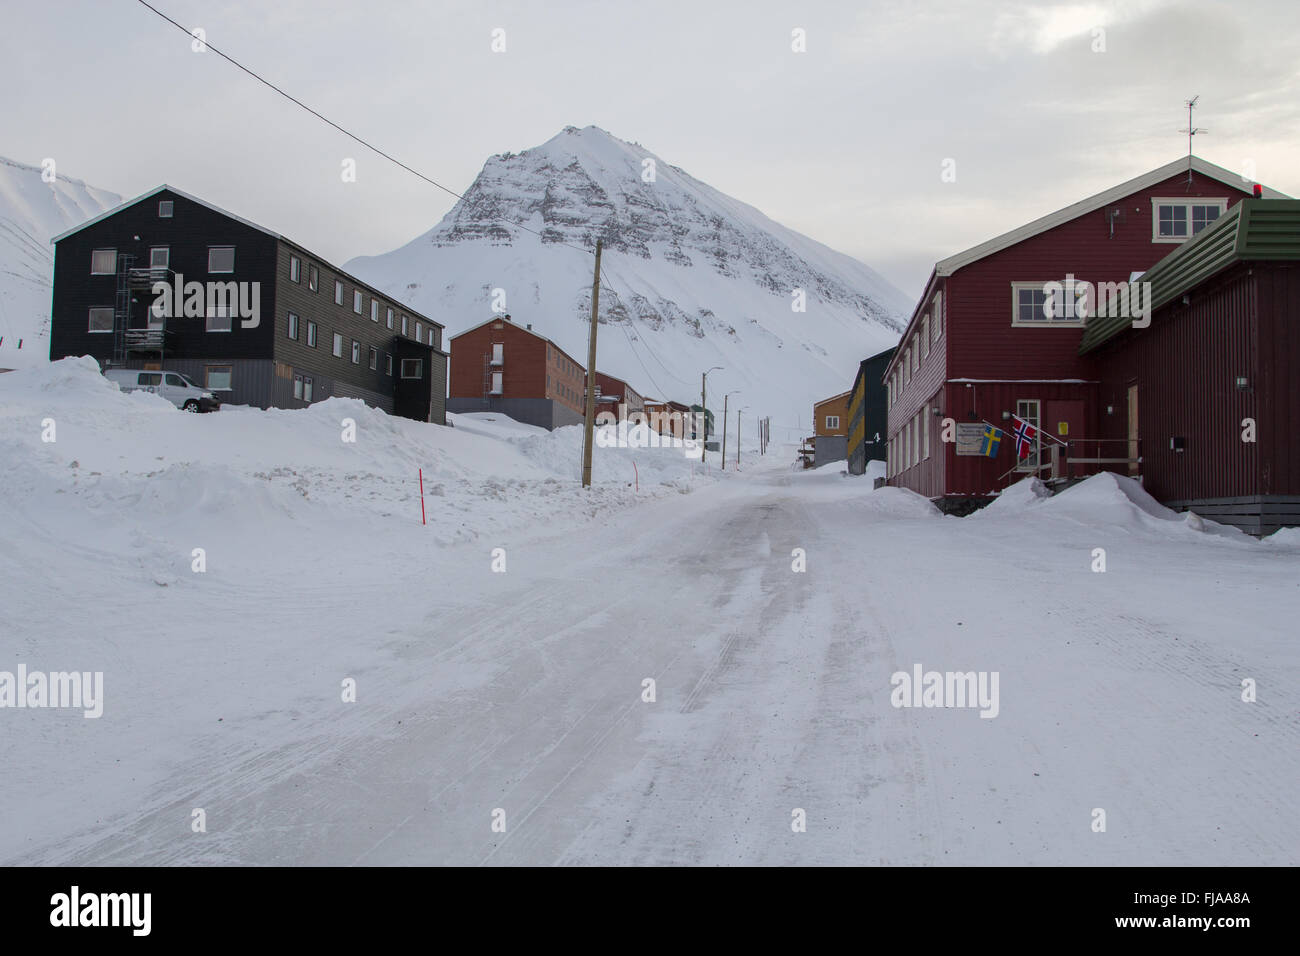 La périphérie de Longyearbyen, au Spitzberg (Svalbard). Hôtels. Mars, encore beaucoup de neige. Banque D'Images